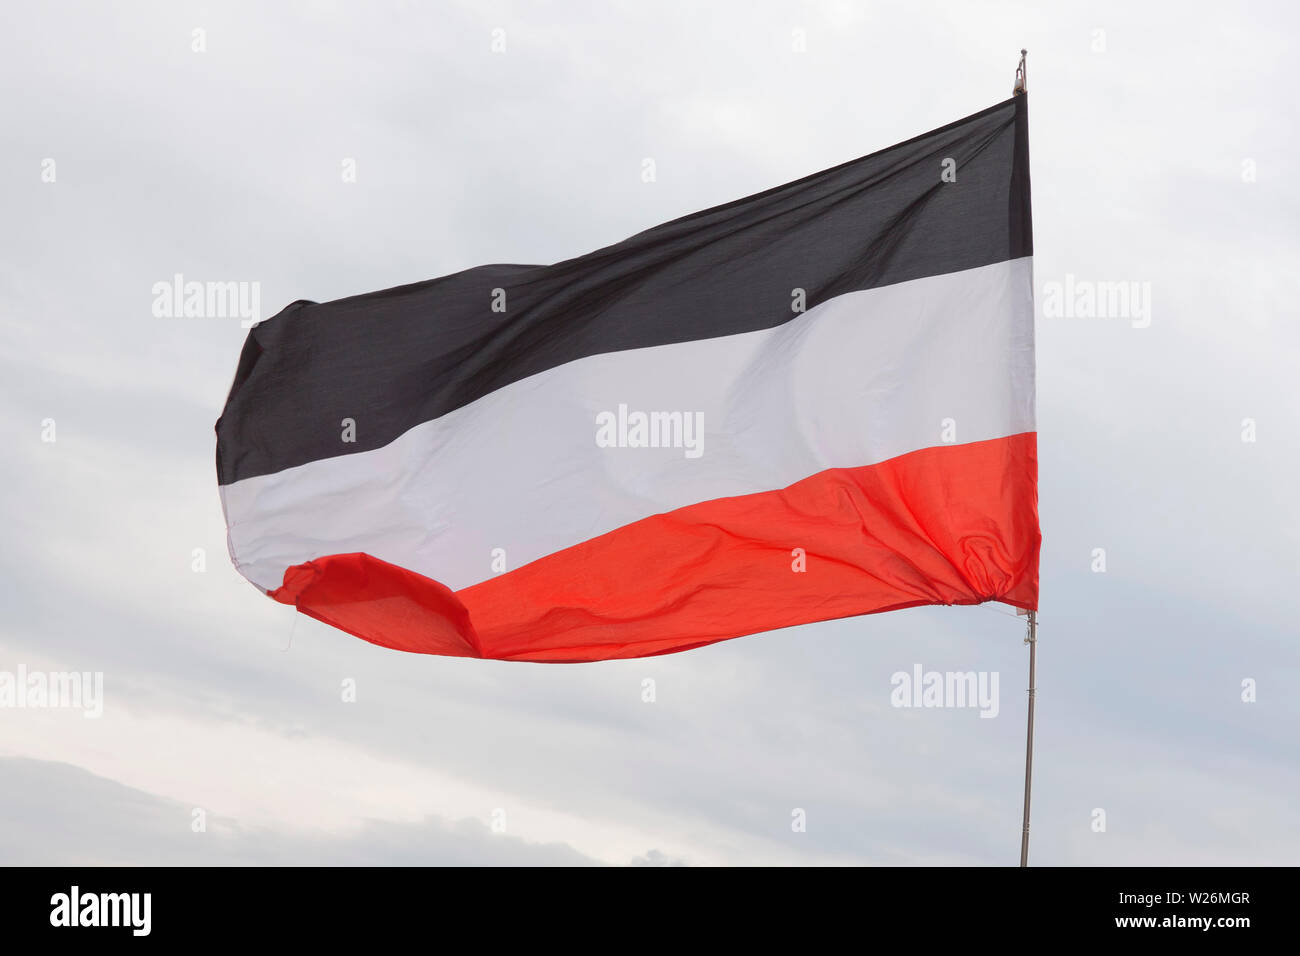 Reich la bandiera, la bandiera del Nord tedesco Confederazione e il Reich Tedesco (Impero, dal 1871 al 1919) e 1933 a 1945 colori del "Terzo Reich" Foto Stock